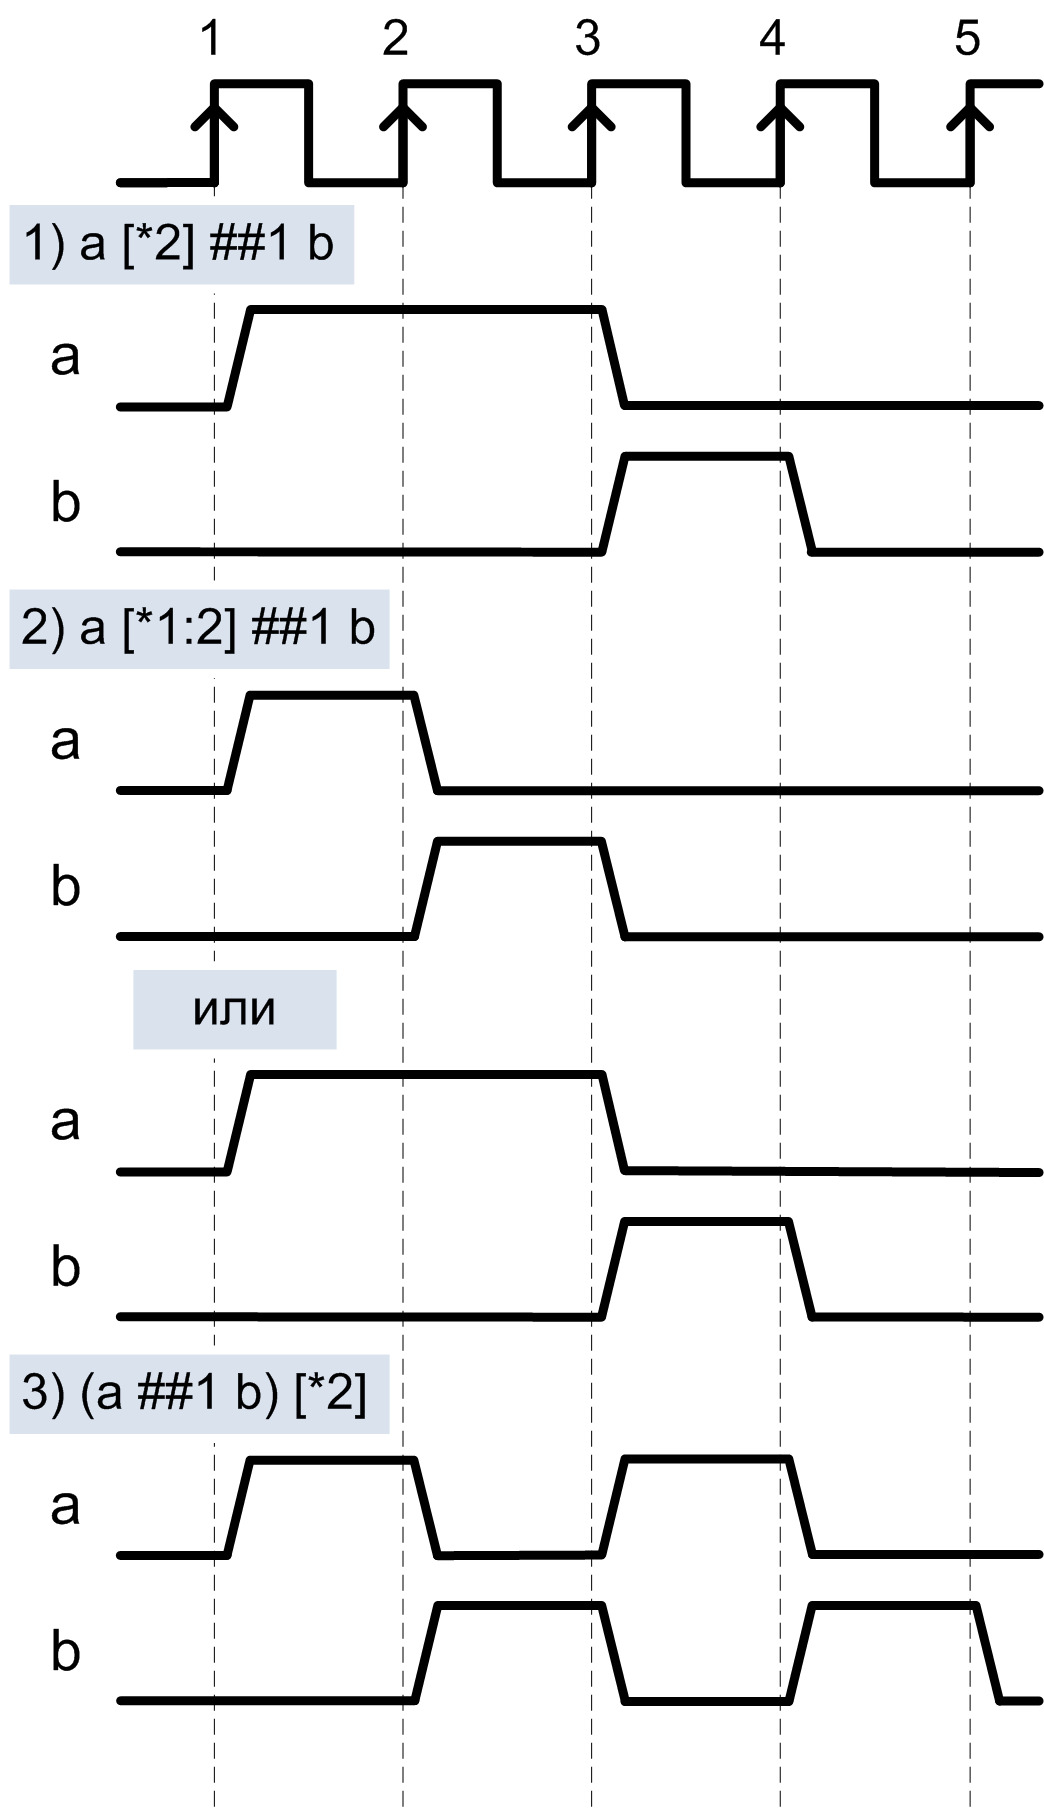 Рис. 6. 1) Сигнал «b» установится в ‘1’ после двух повторений сигнала «a». 2) Сигнал «b» 
	установится в ‘1’ после 1-го или 2-х повторений «a». 3) Последовательность «a ##1 b» повторится 2 раза.